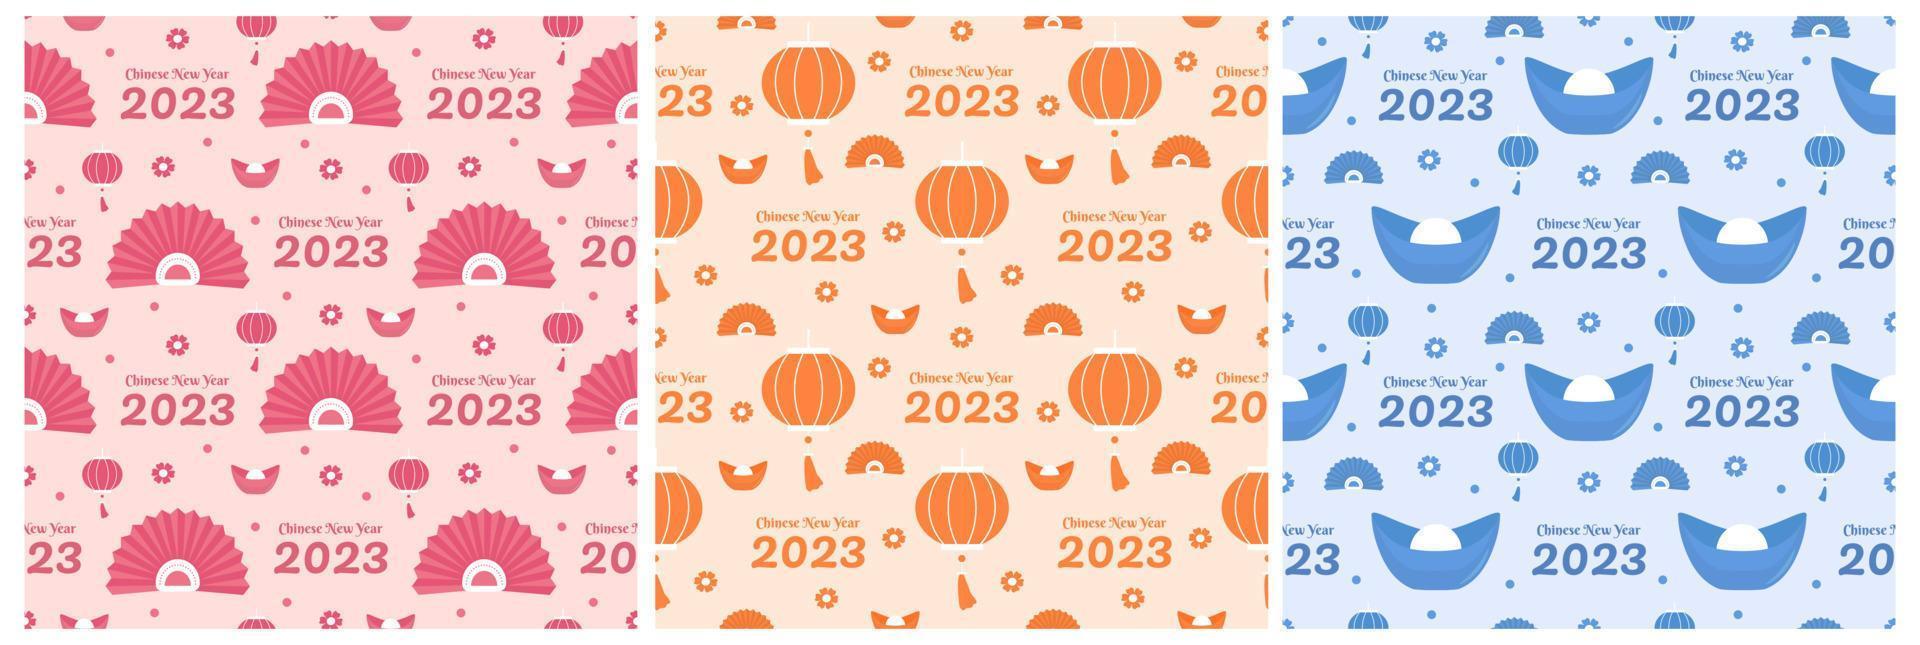 conjunto de ano novo lunar chinês 2023 dias modelo de decoração padrão sem costura ilustração plana de desenhos animados desenhados à mão vetor